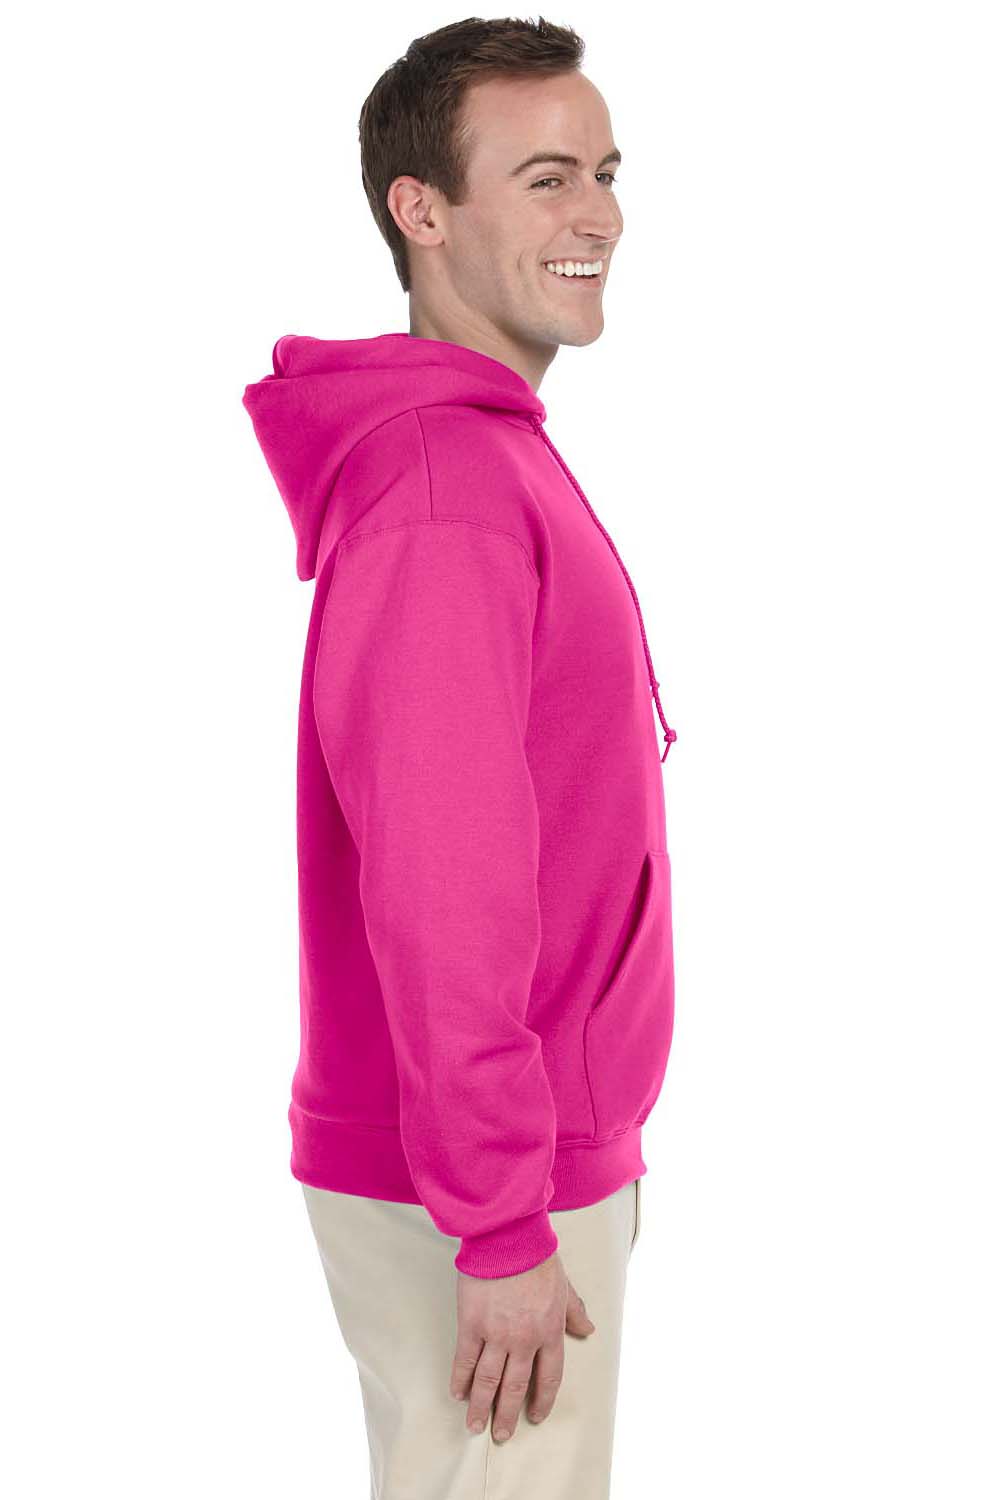 Jerzees 996 Mens NuBlend Fleece Hooded Sweatshirt Hoodie Cyber Pink Side